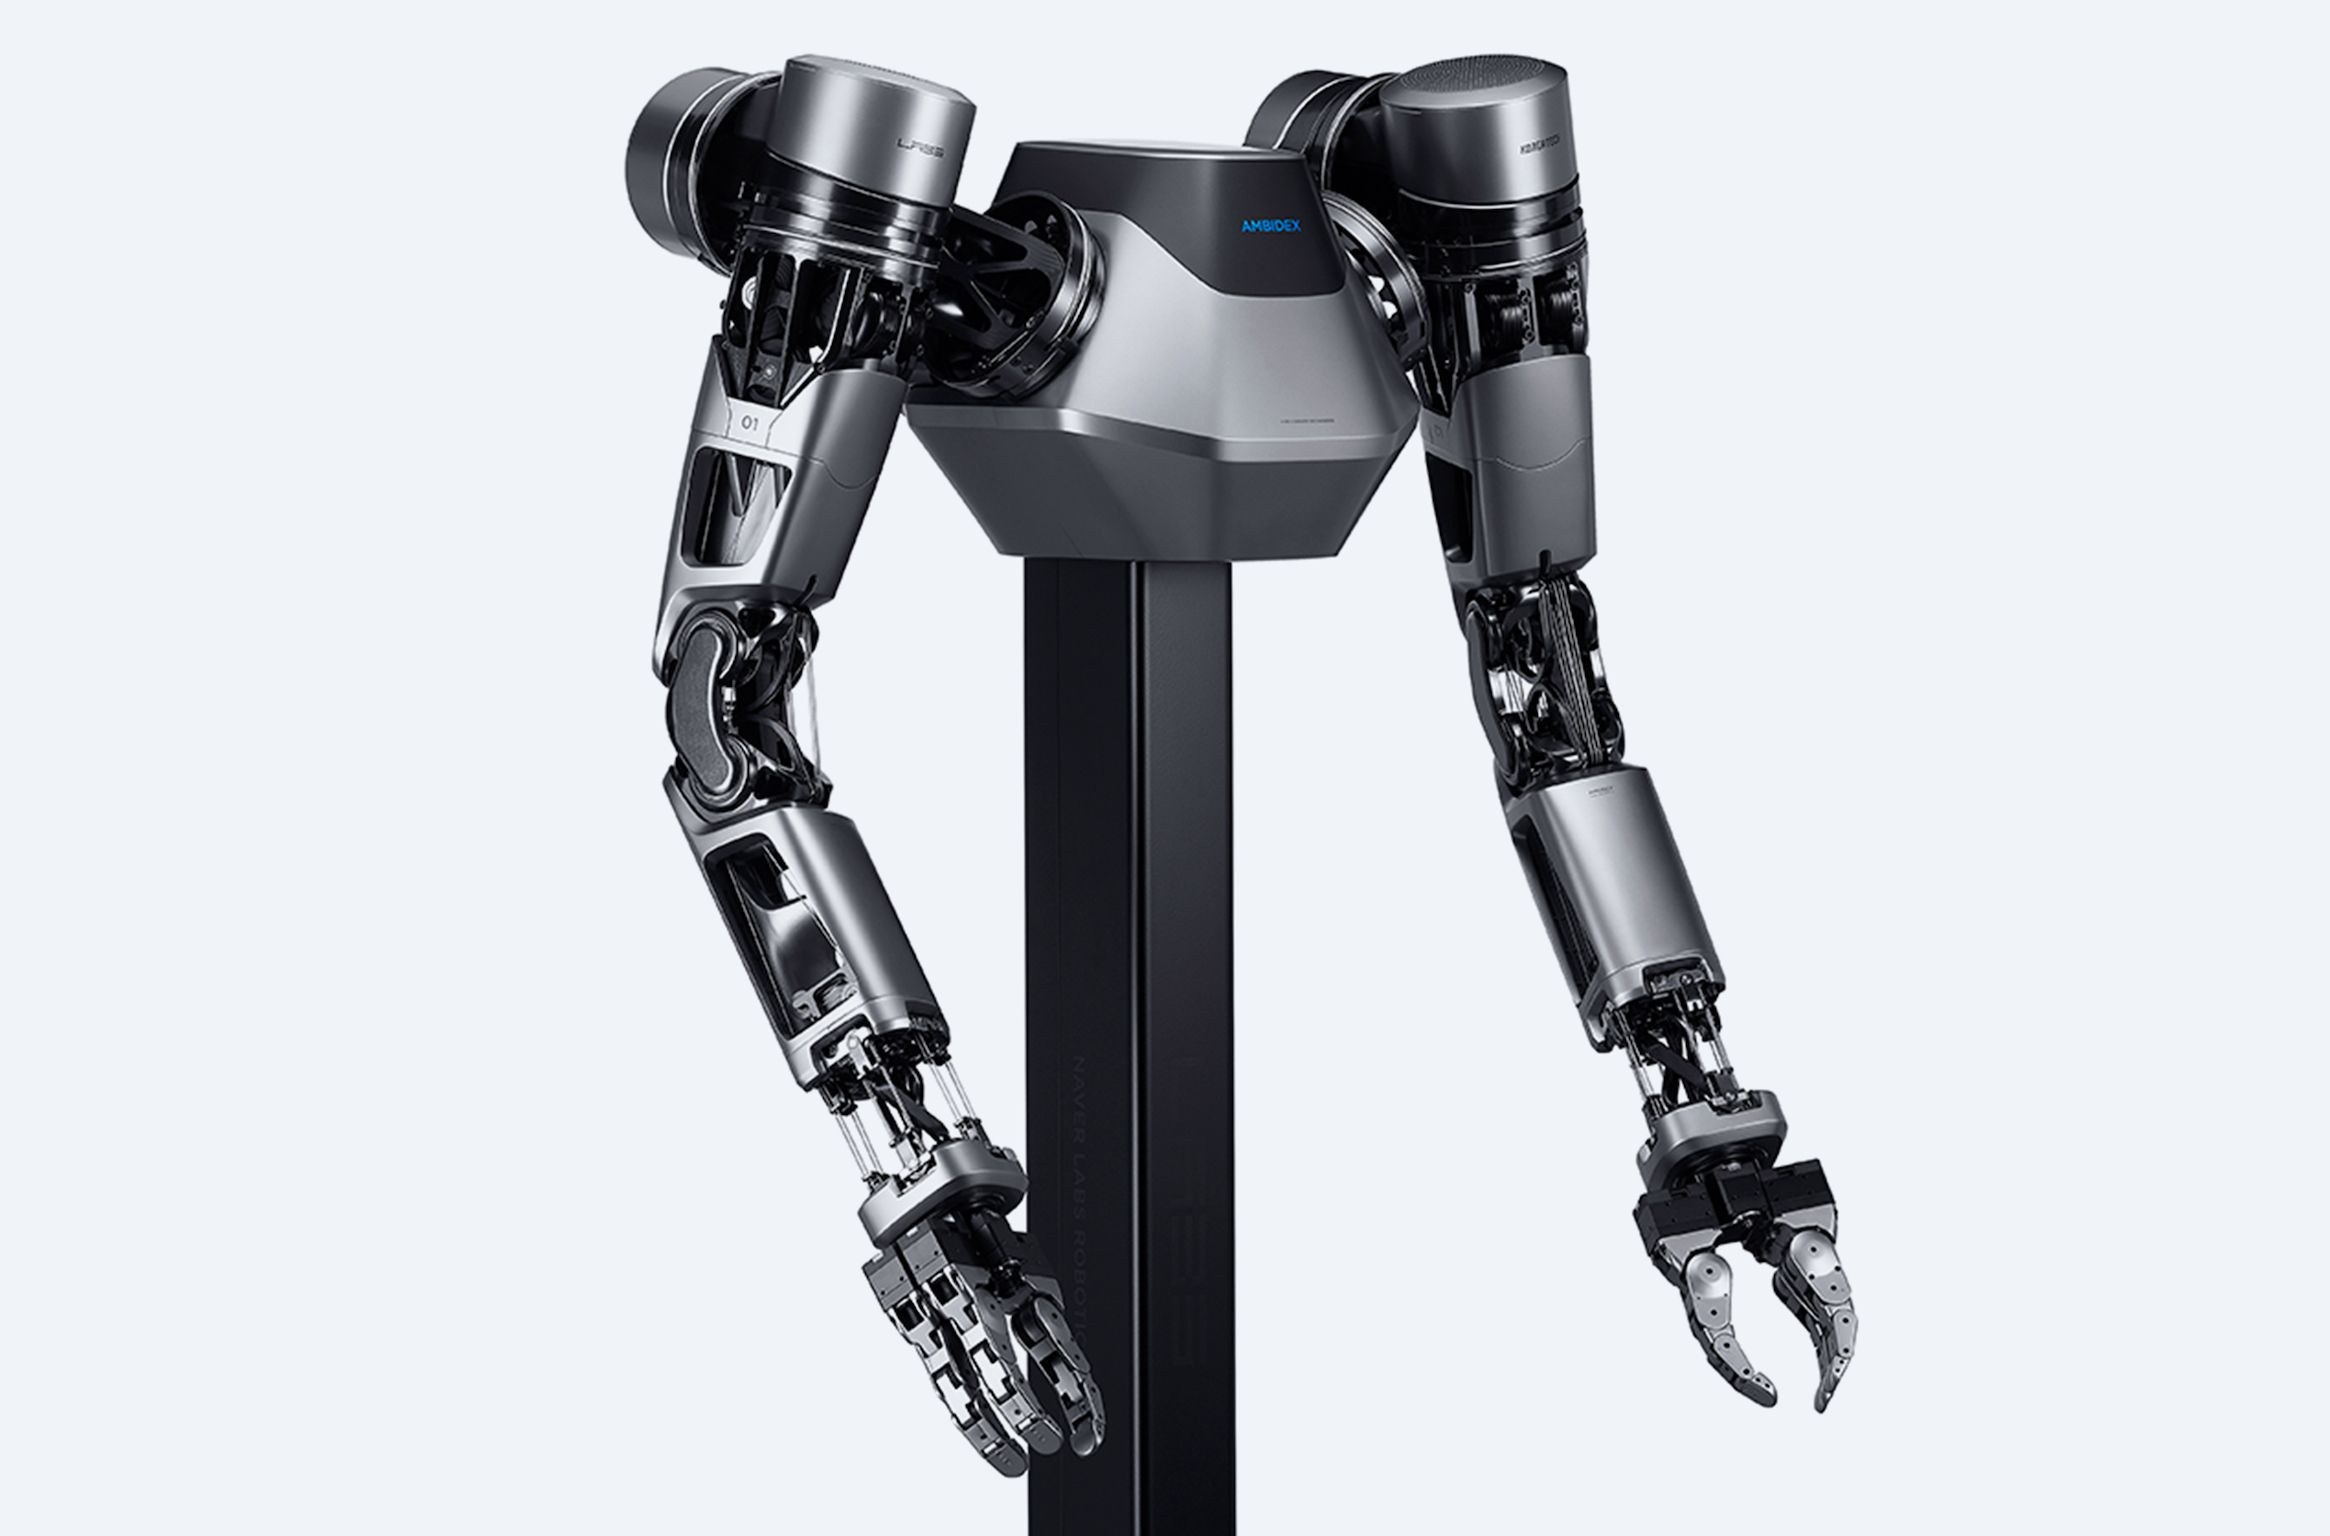 Купить роборуку. Робот xm1219 Armed Robotic vehicle. Waveshare робот Пимнара металлический робот. Роборука манипулятор. Рука робота.